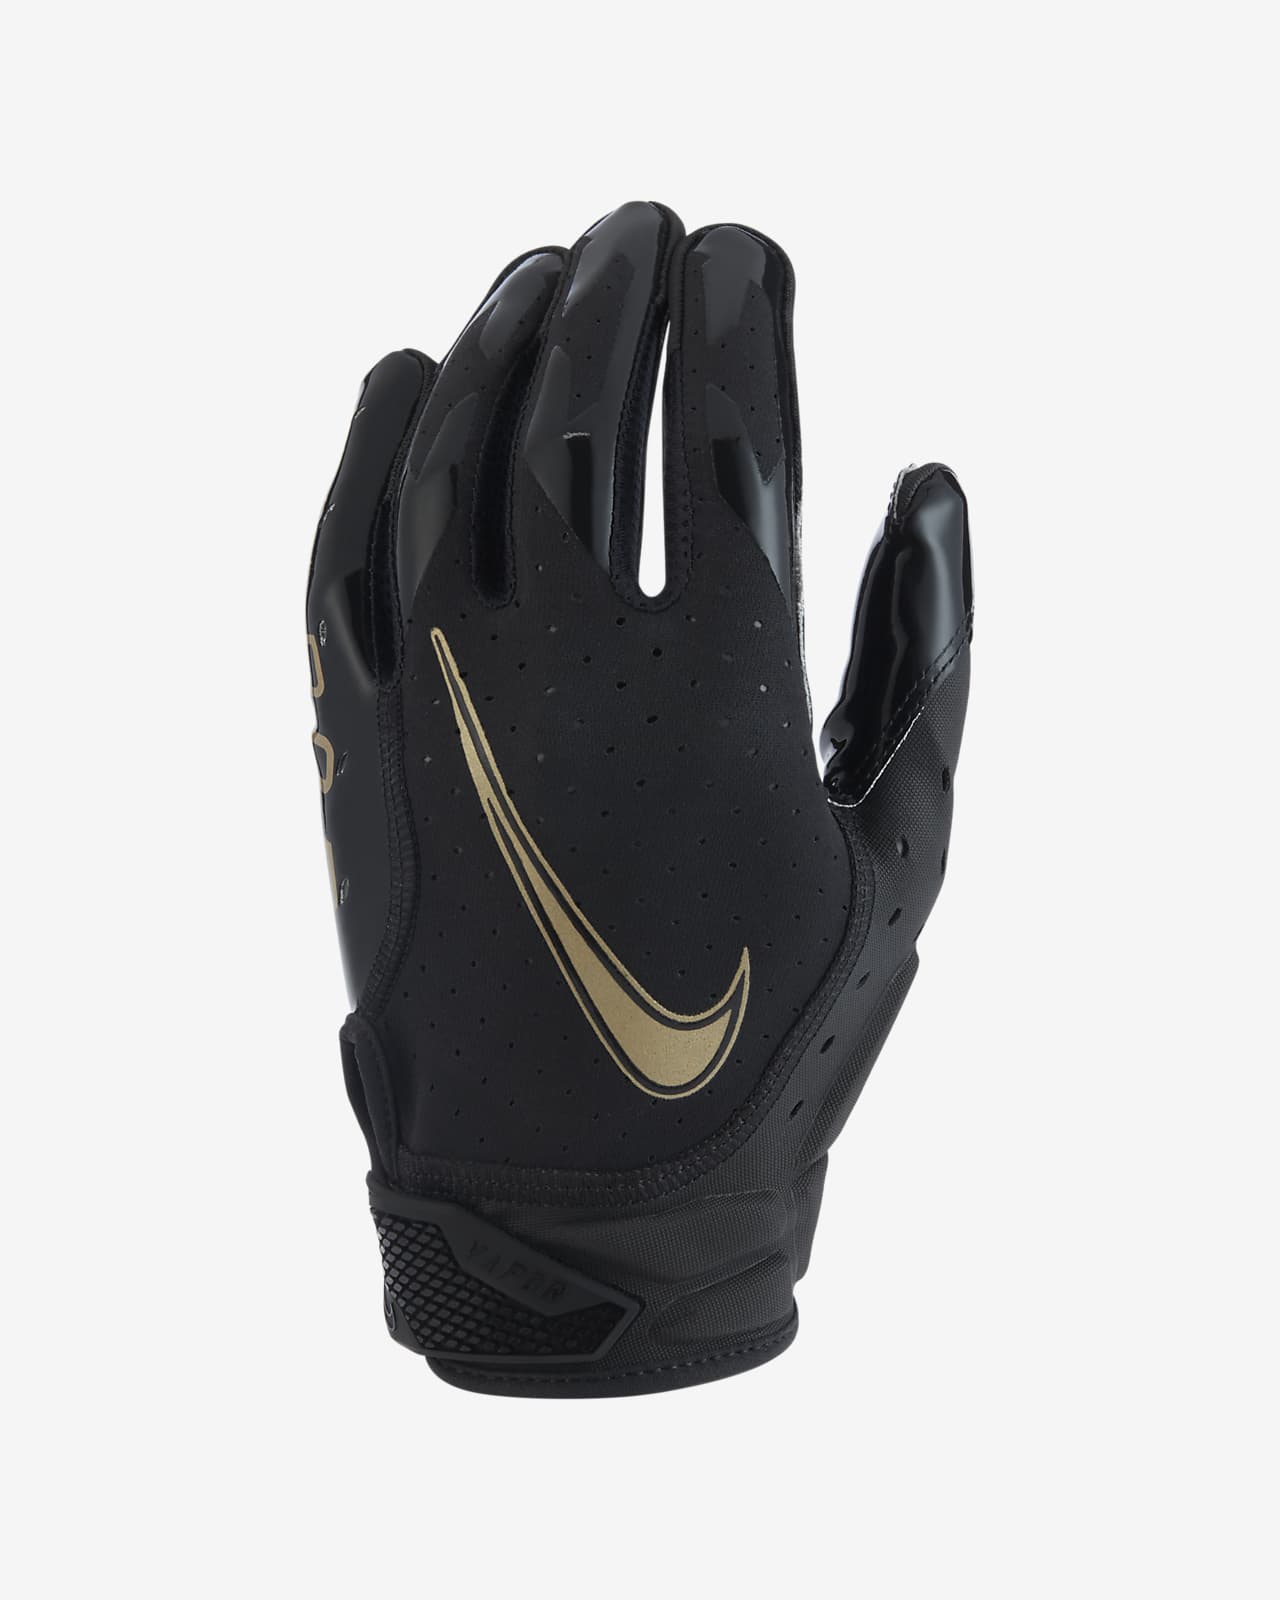 Nike Vapor Jet 6.0 Football Gloves.